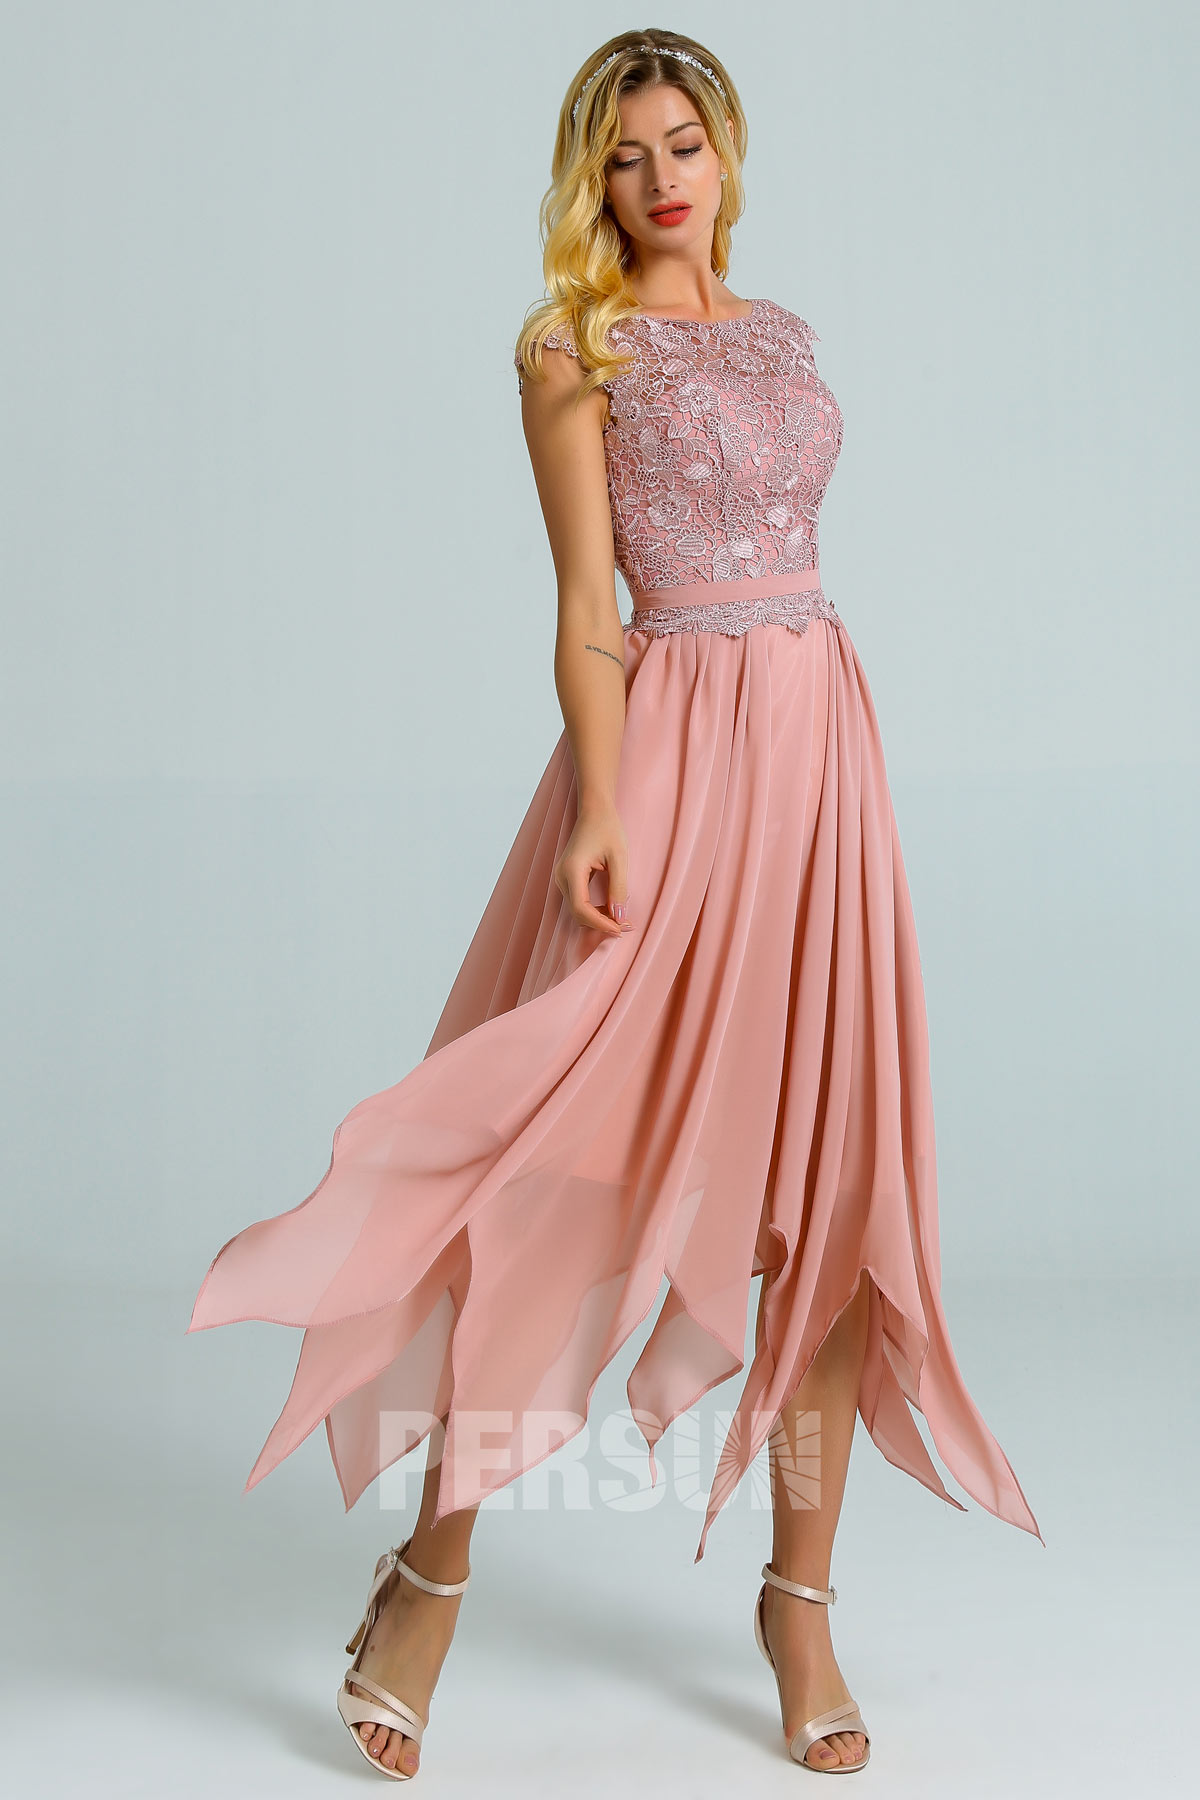 robe de cocktail courte rose chair haut en dentelle florale jupe irrégulière